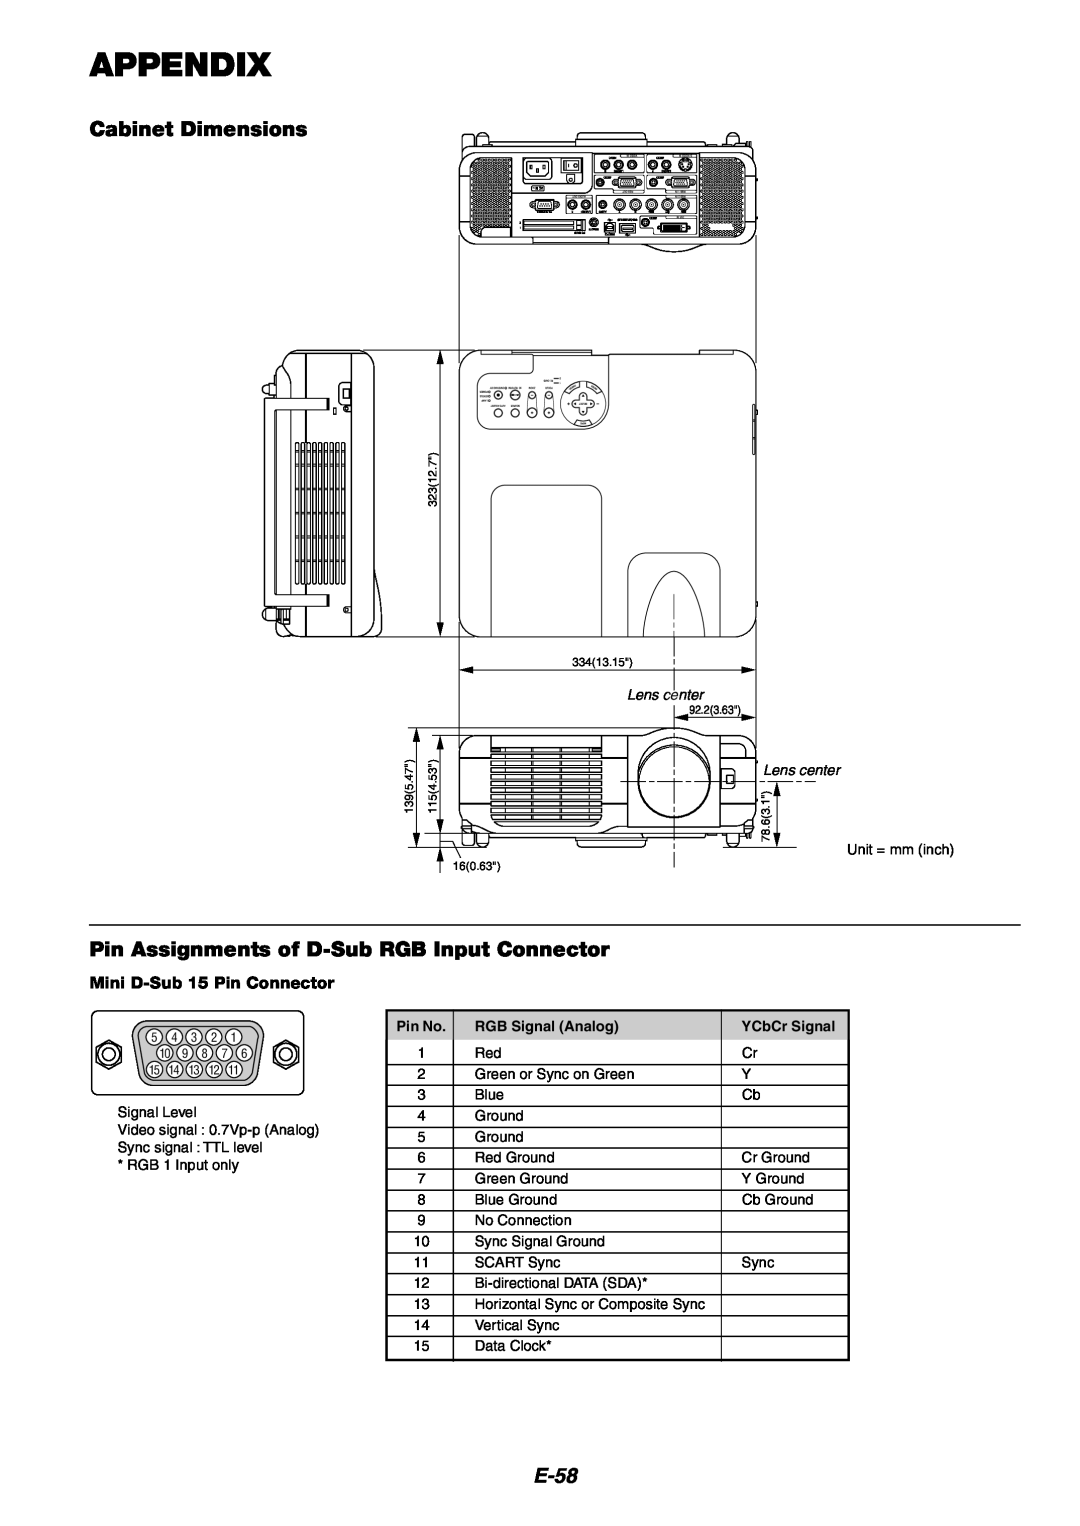 NEC MT1060 Appendix, Cabinet Dimensions, Pin Assignments of D-SubRGB Input Connector, E-58, Mini D-Sub15 Pin Connector 